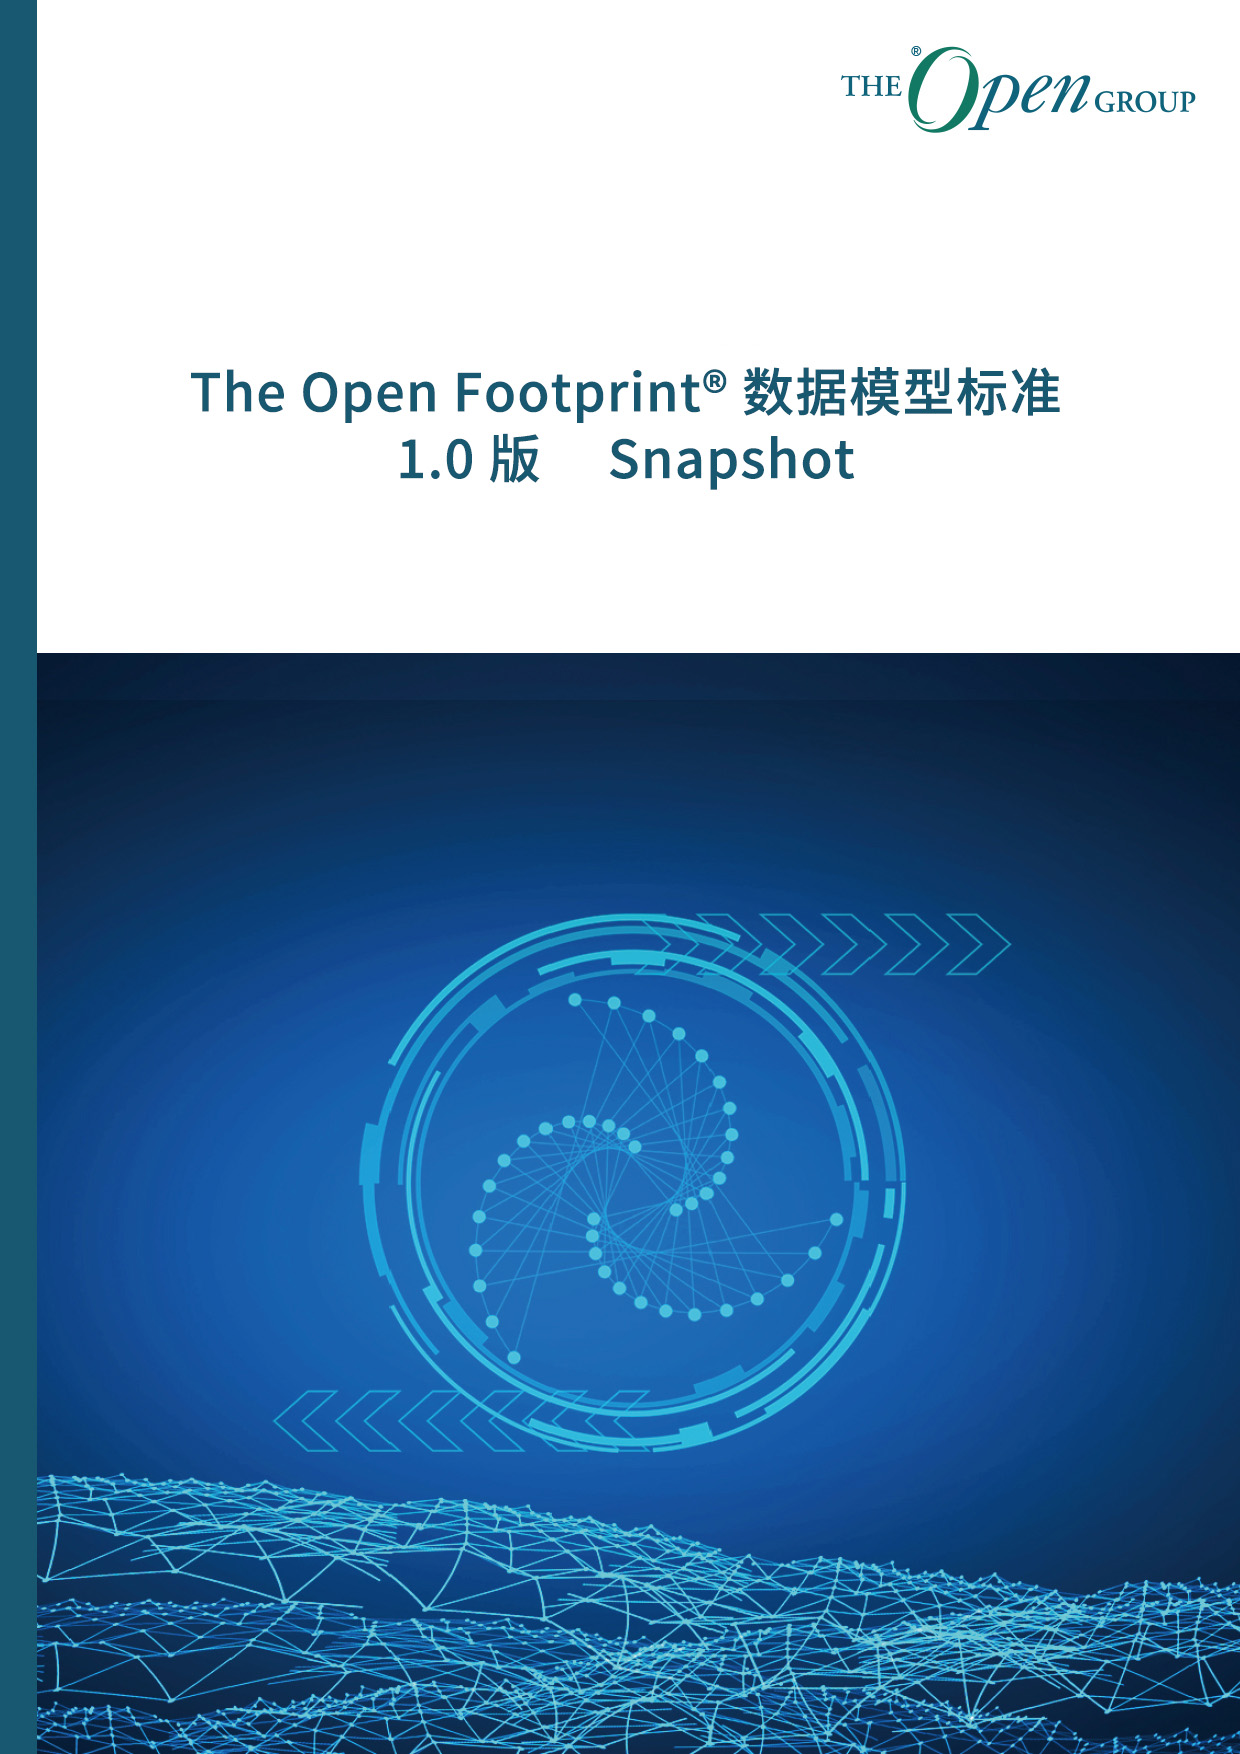 本快照文件的主题是 The Open Footprint® 数据模型标准 1.0 版快照 1 的规格说明